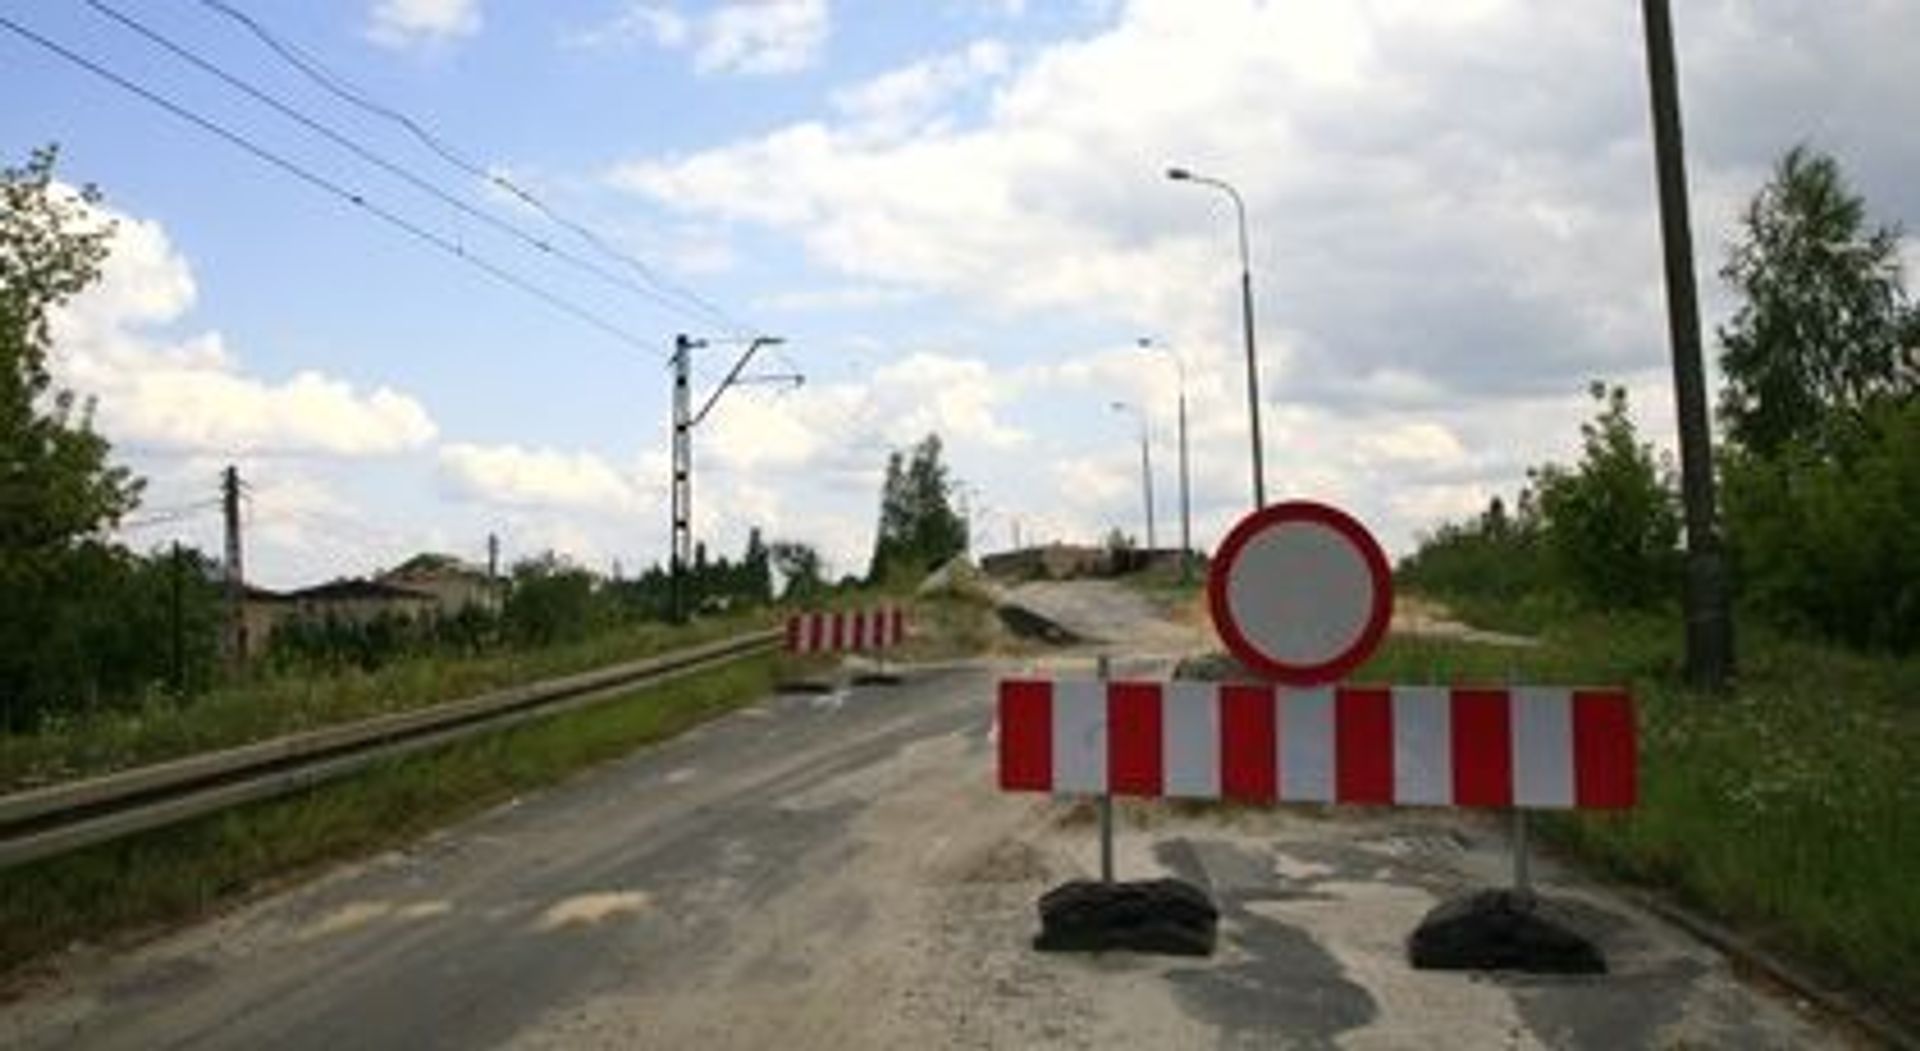  Sosnowiec: wiadukt na Małobądzkiej zamknięty także dla pieszych